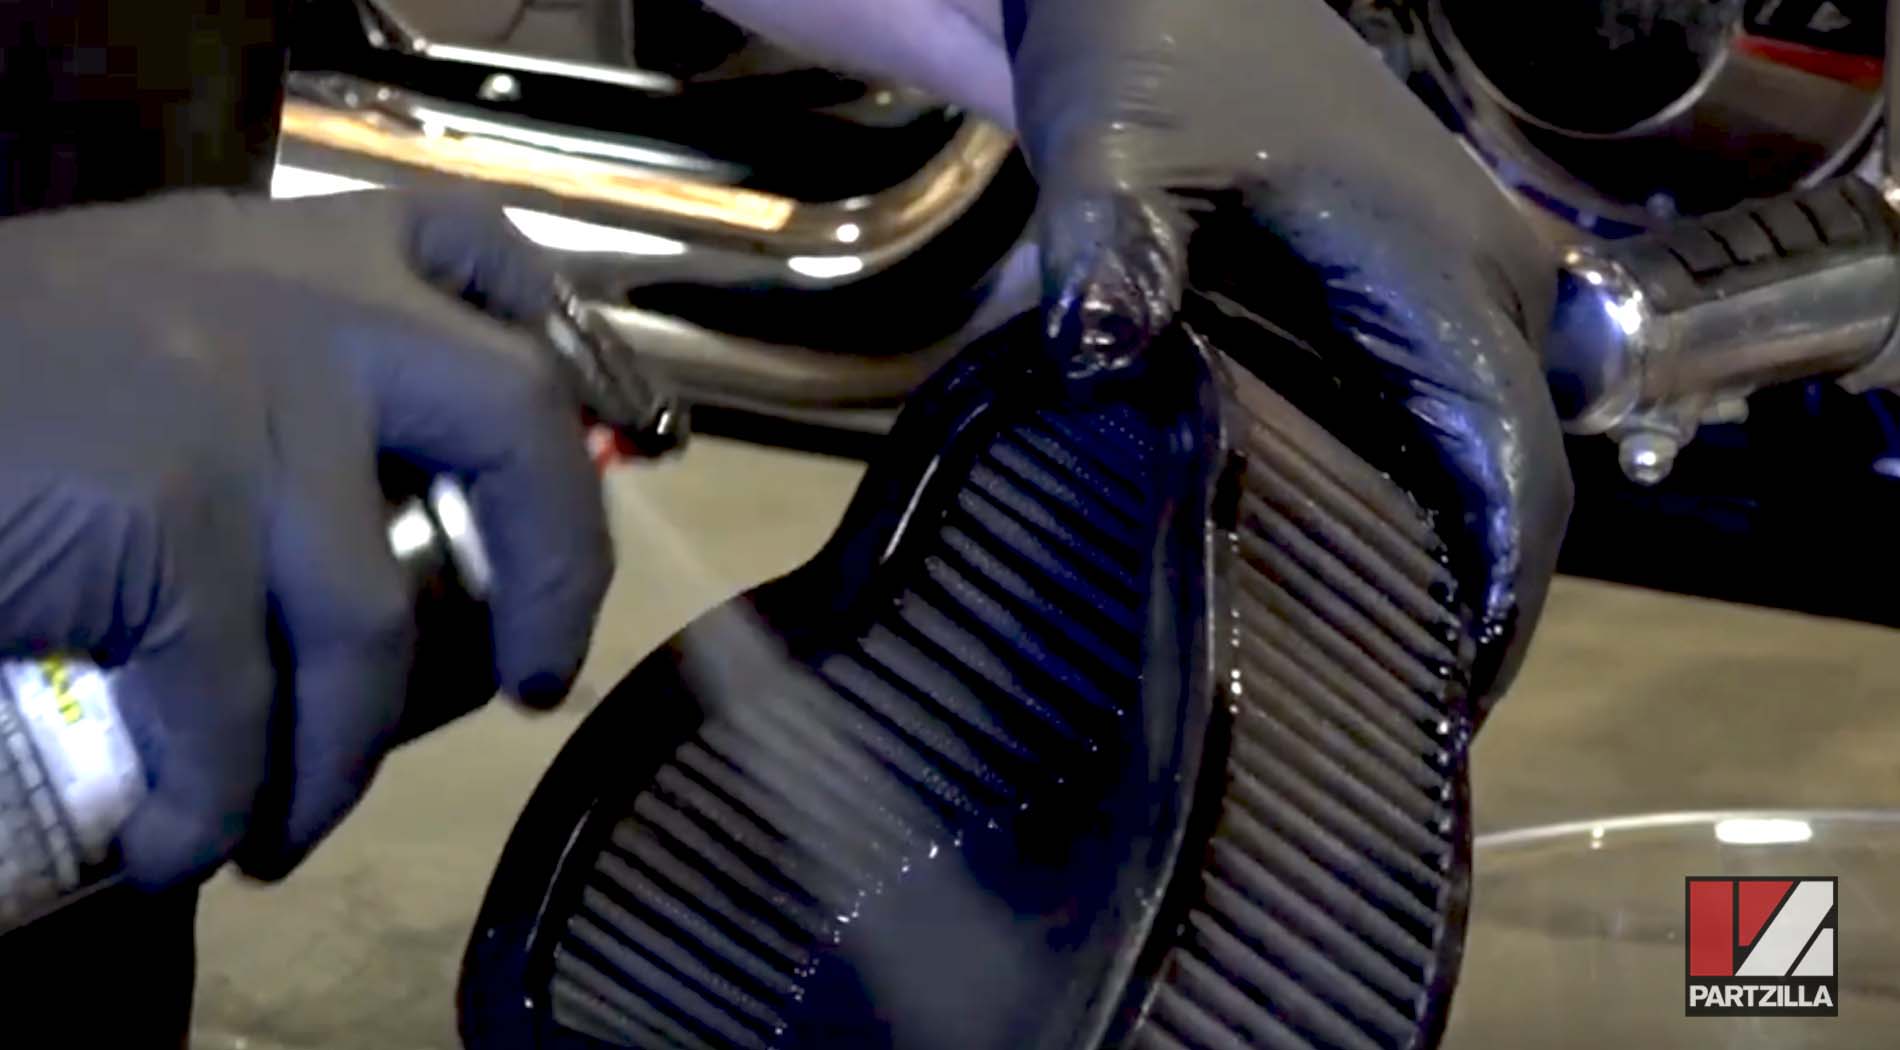 Honda motorcycle K&N filter cleaning 